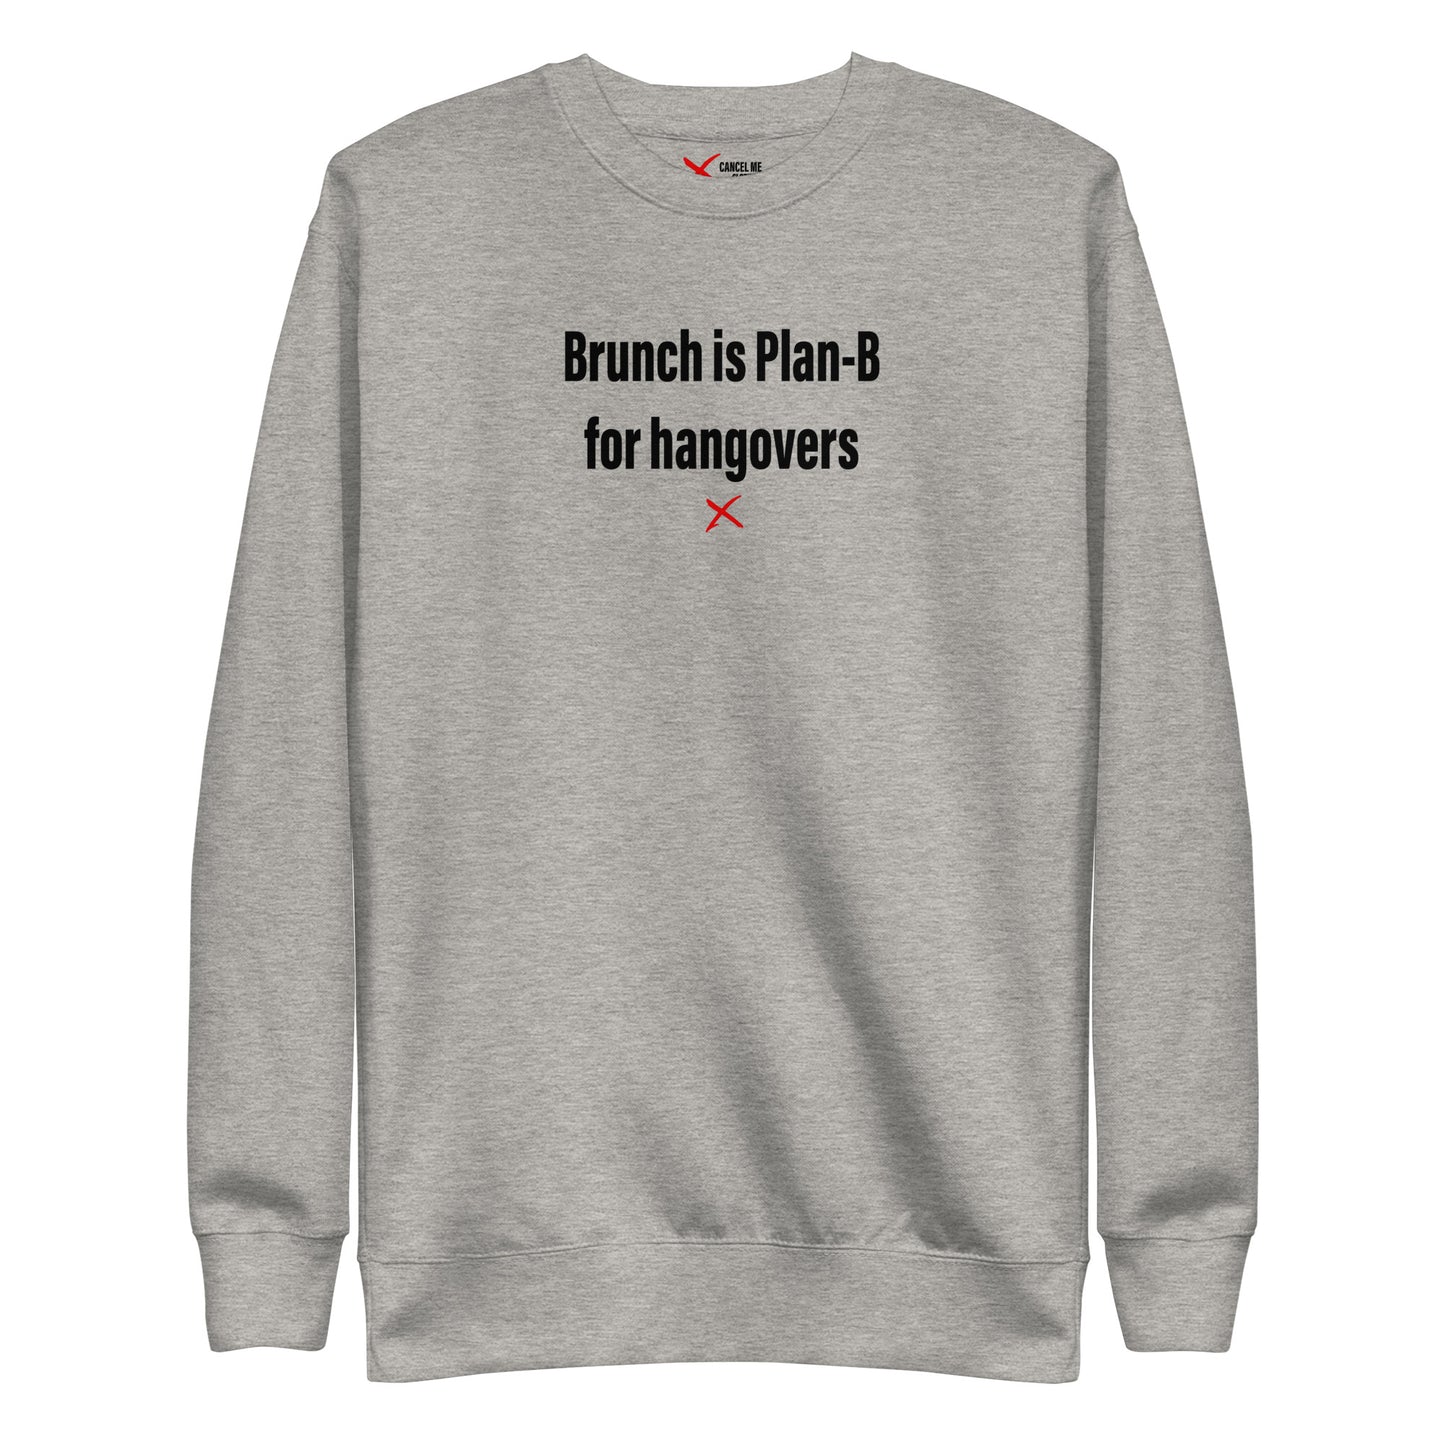 Brunch is Plan-B for hangovers - Sweatshirt